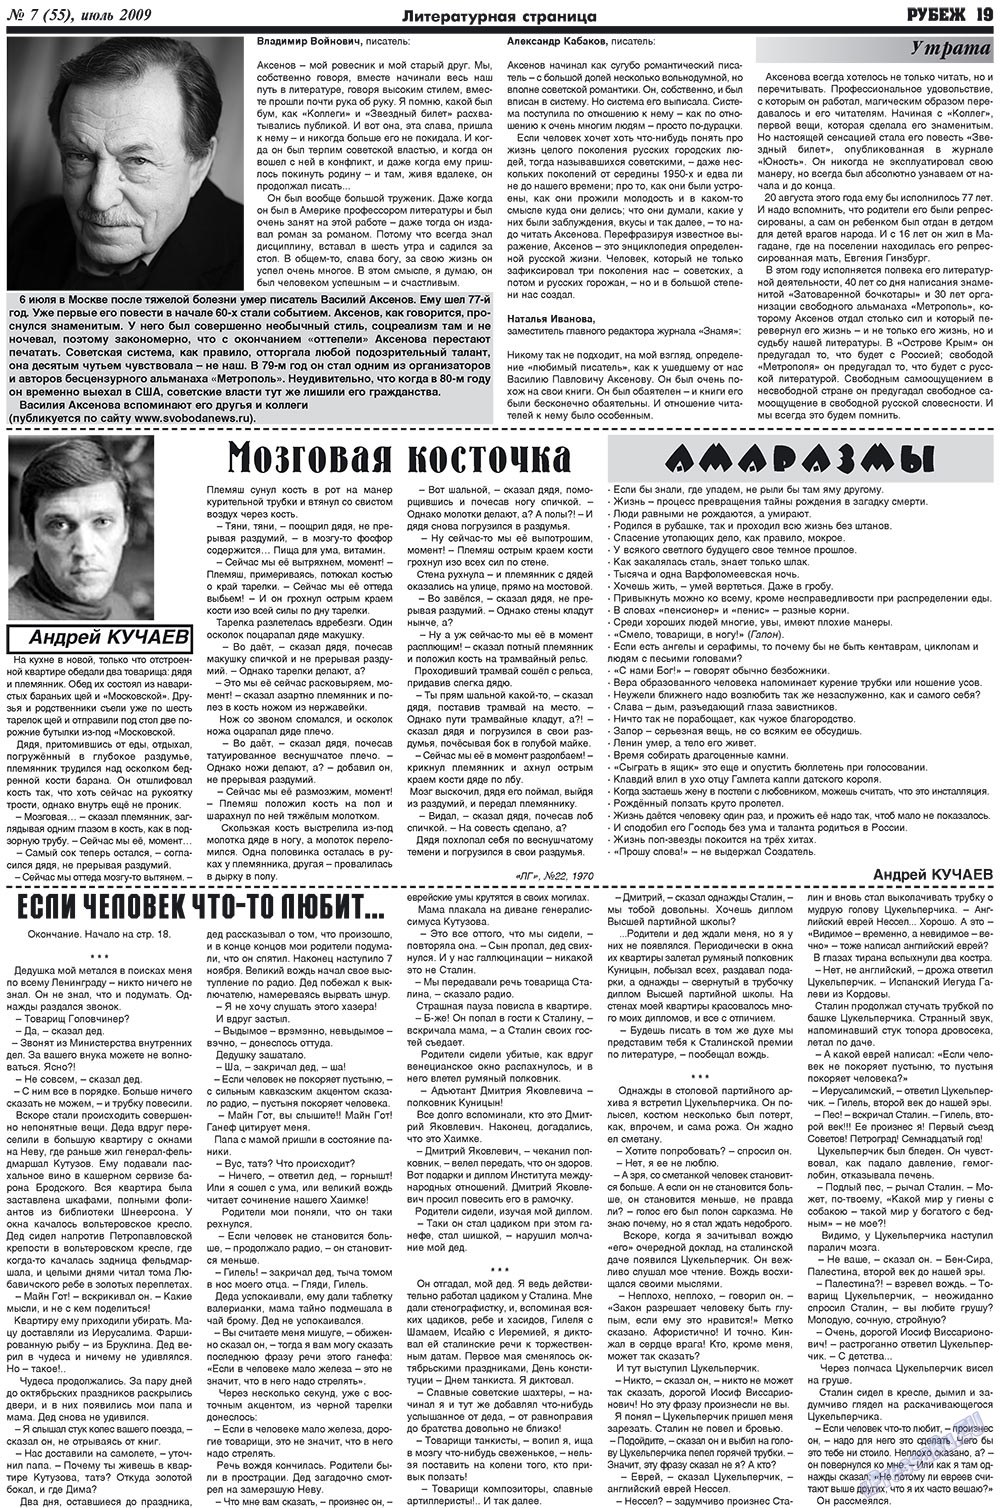 Рубеж (газета). 2009 год, номер 7, стр. 19